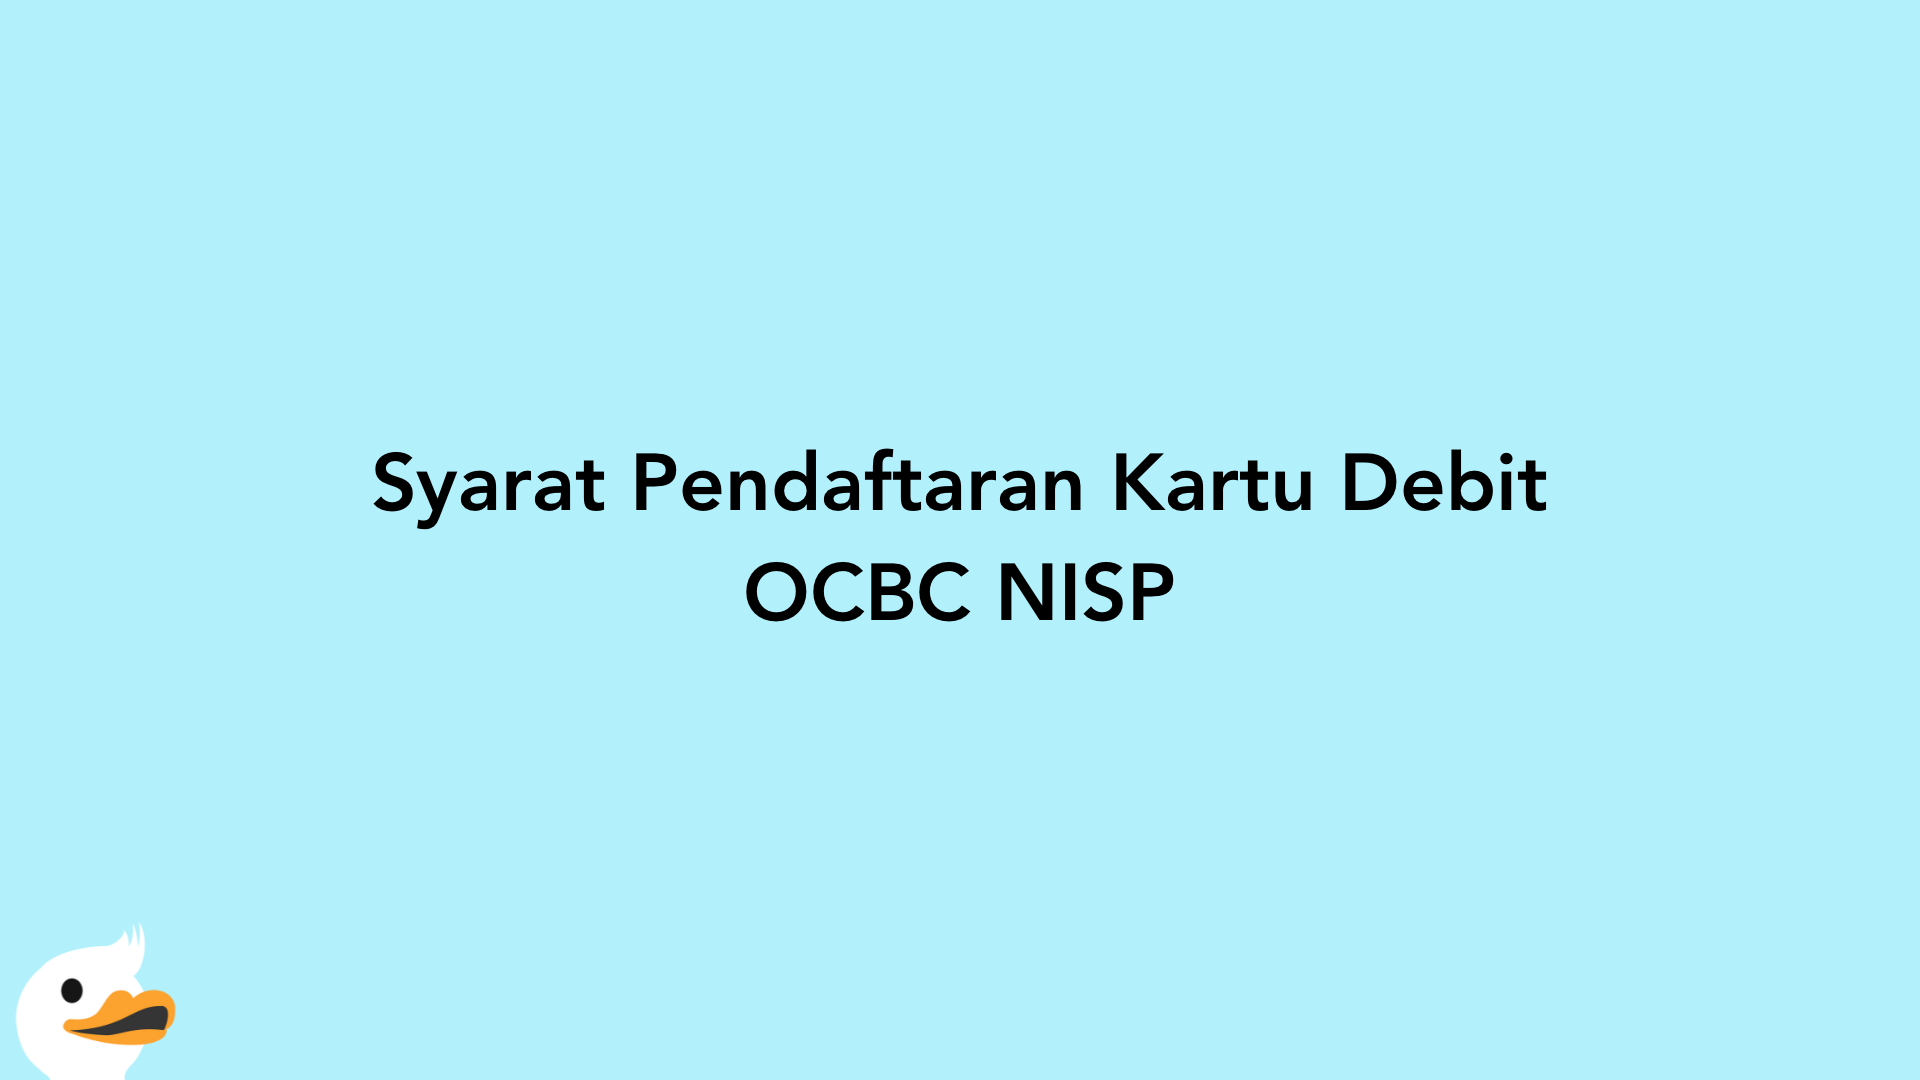 Syarat Pendaftaran Kartu Debit OCBC NISP